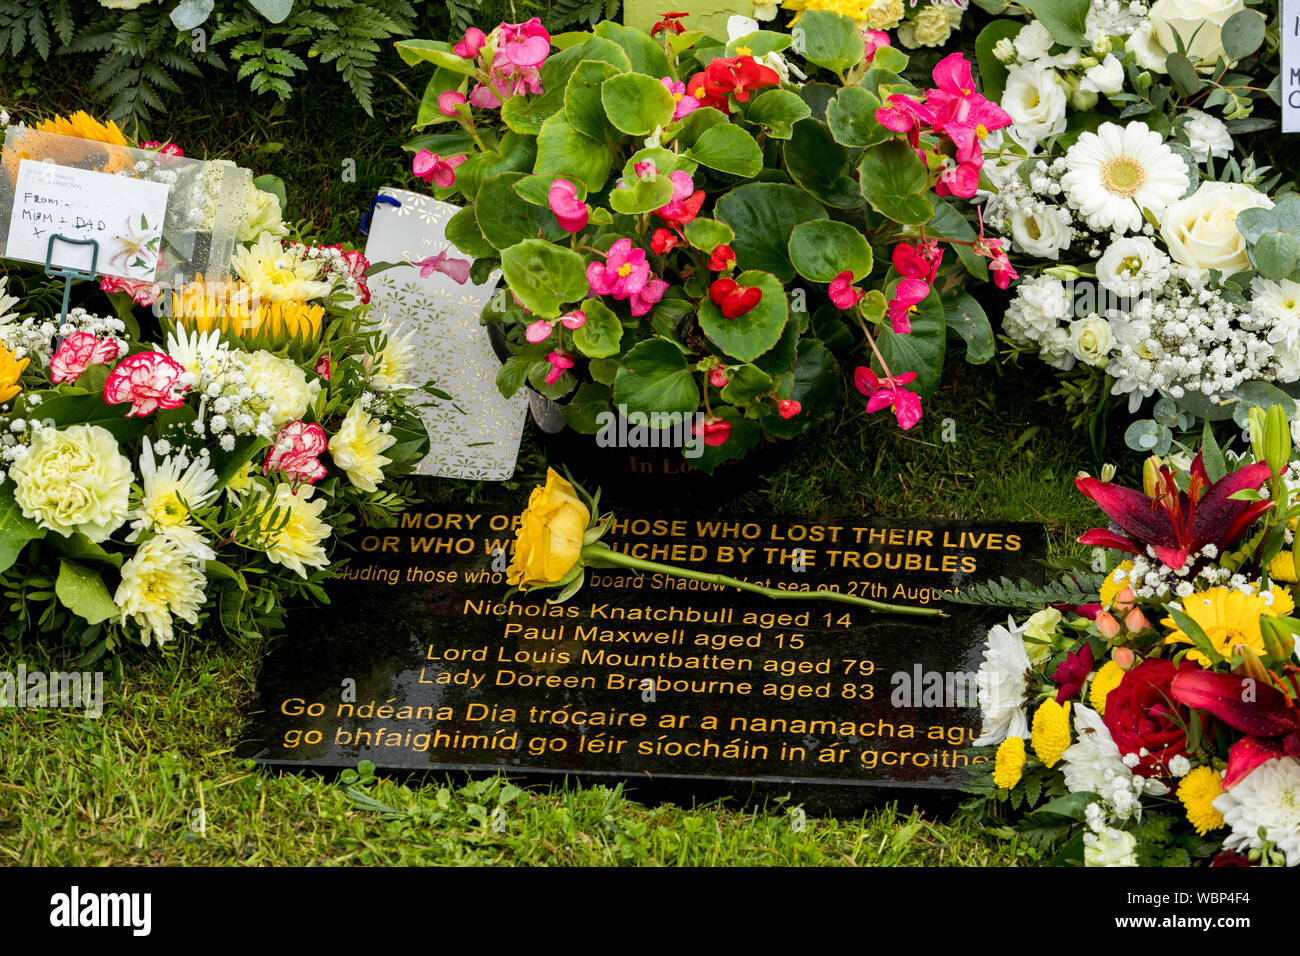 Die gelbe Rose von Maria, der Mutter der Hornsey Paul Maxwell, mit Kränzen und Blumen Rest am Denkmal Kreuz, mit Blick auf den Hafen von Mullaghmore, Co Sligo, zu denen, die vor 40 Jahren getötet wurden, als Herr MountbattenÕs Boot in die Luft gesprengt wurde, die von der IRA, vor der Küste von mullaghmore am 27. August 1979. Stockfoto